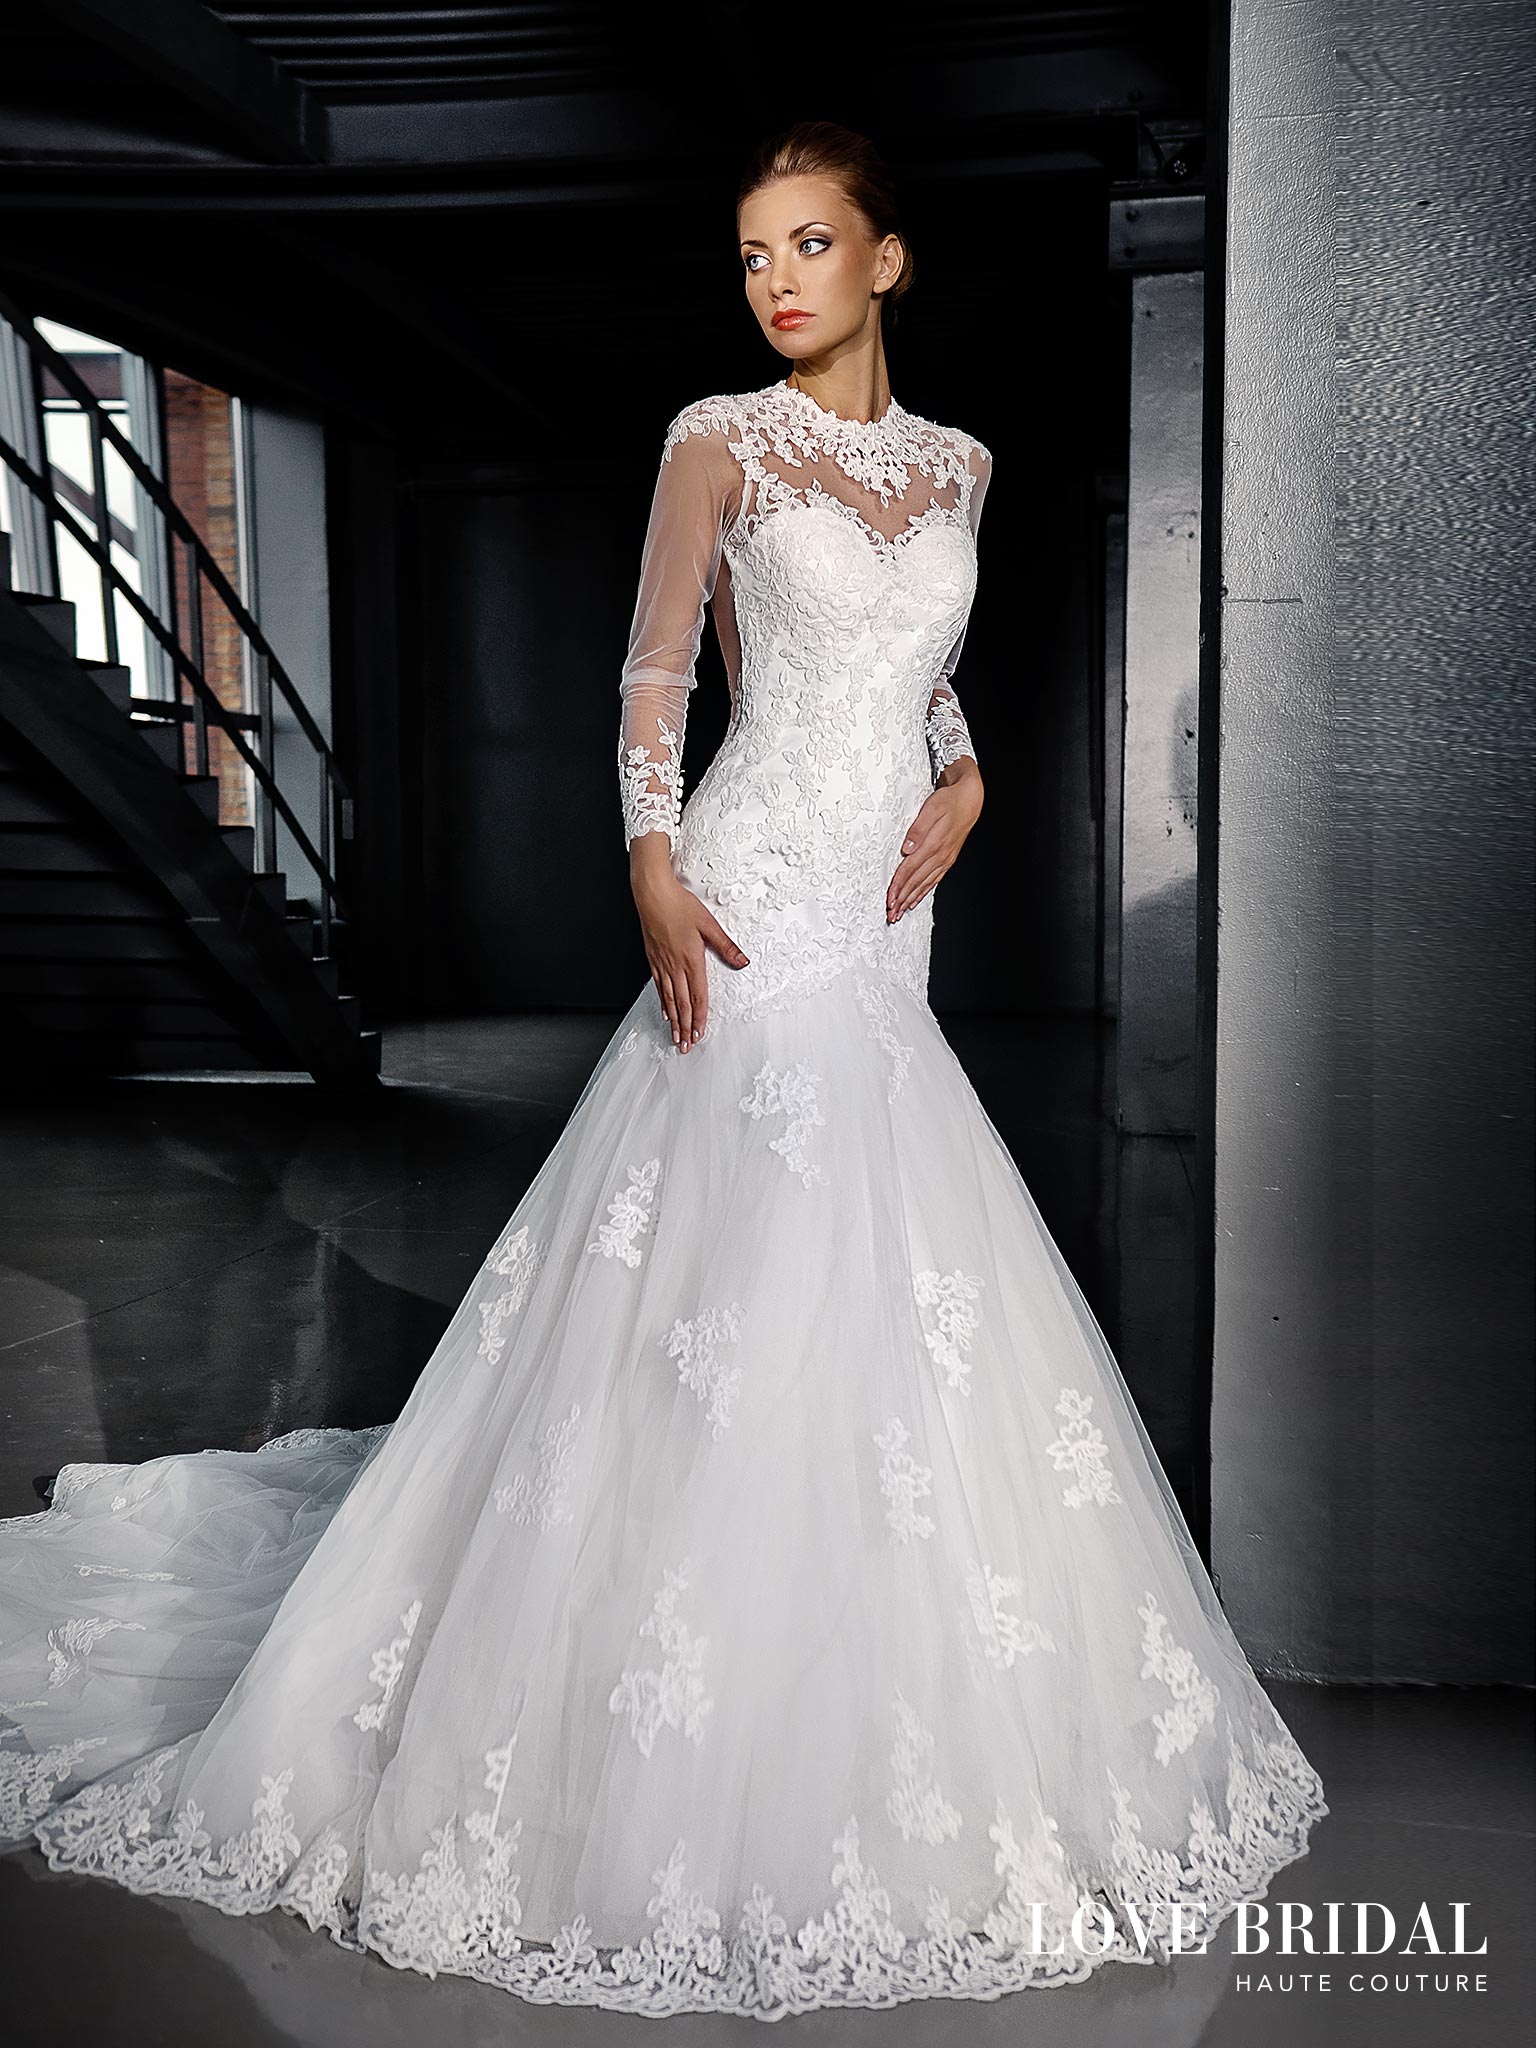 Купить свадебное платье русалка в Москве Love Bridal арт.13579